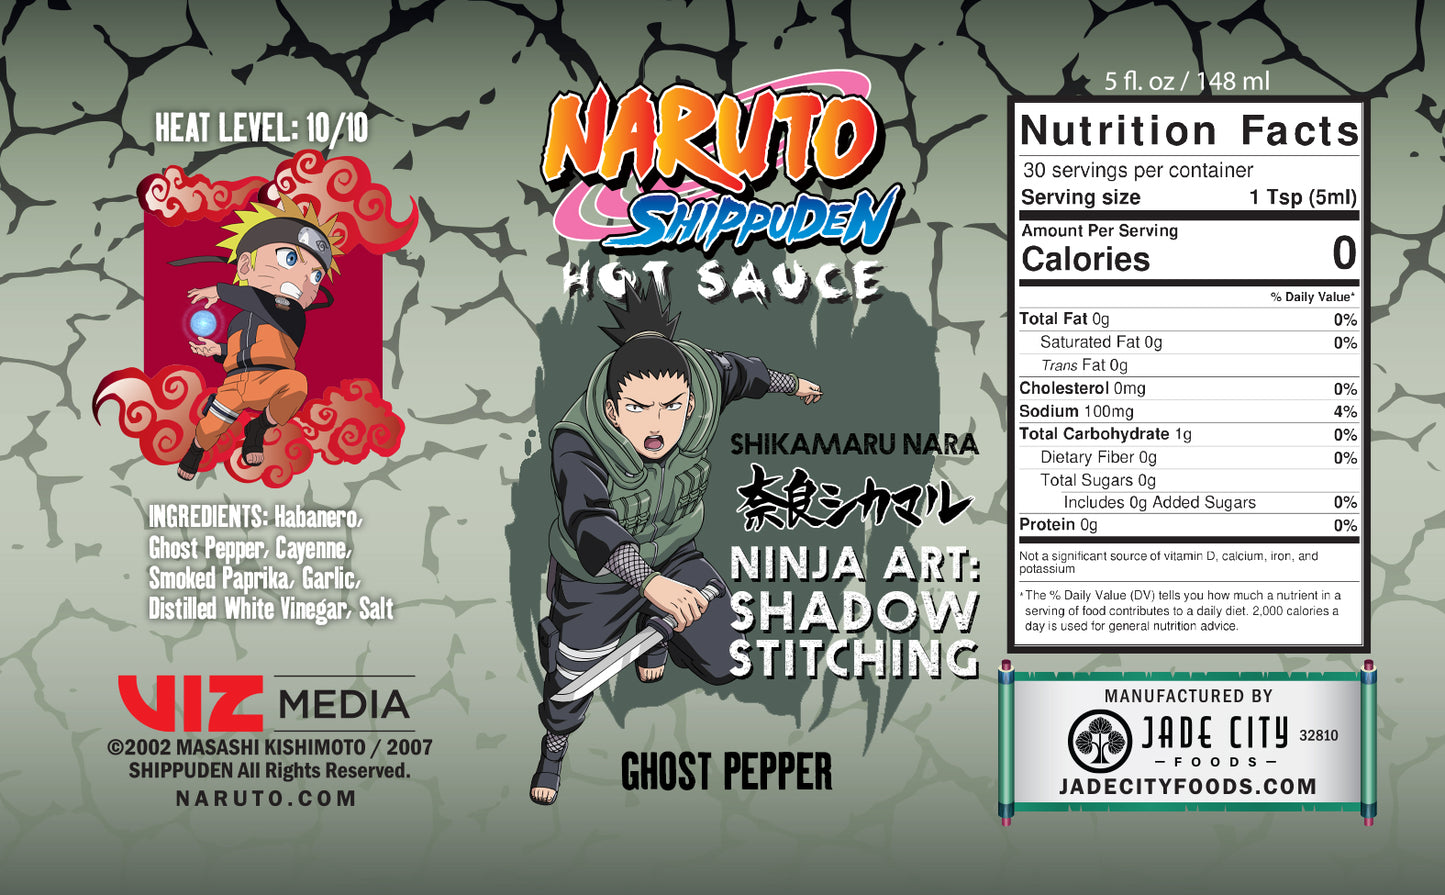 Shikamaru Nara's Ninja Art Shadow Stitching : Ghost Pepper Sauce